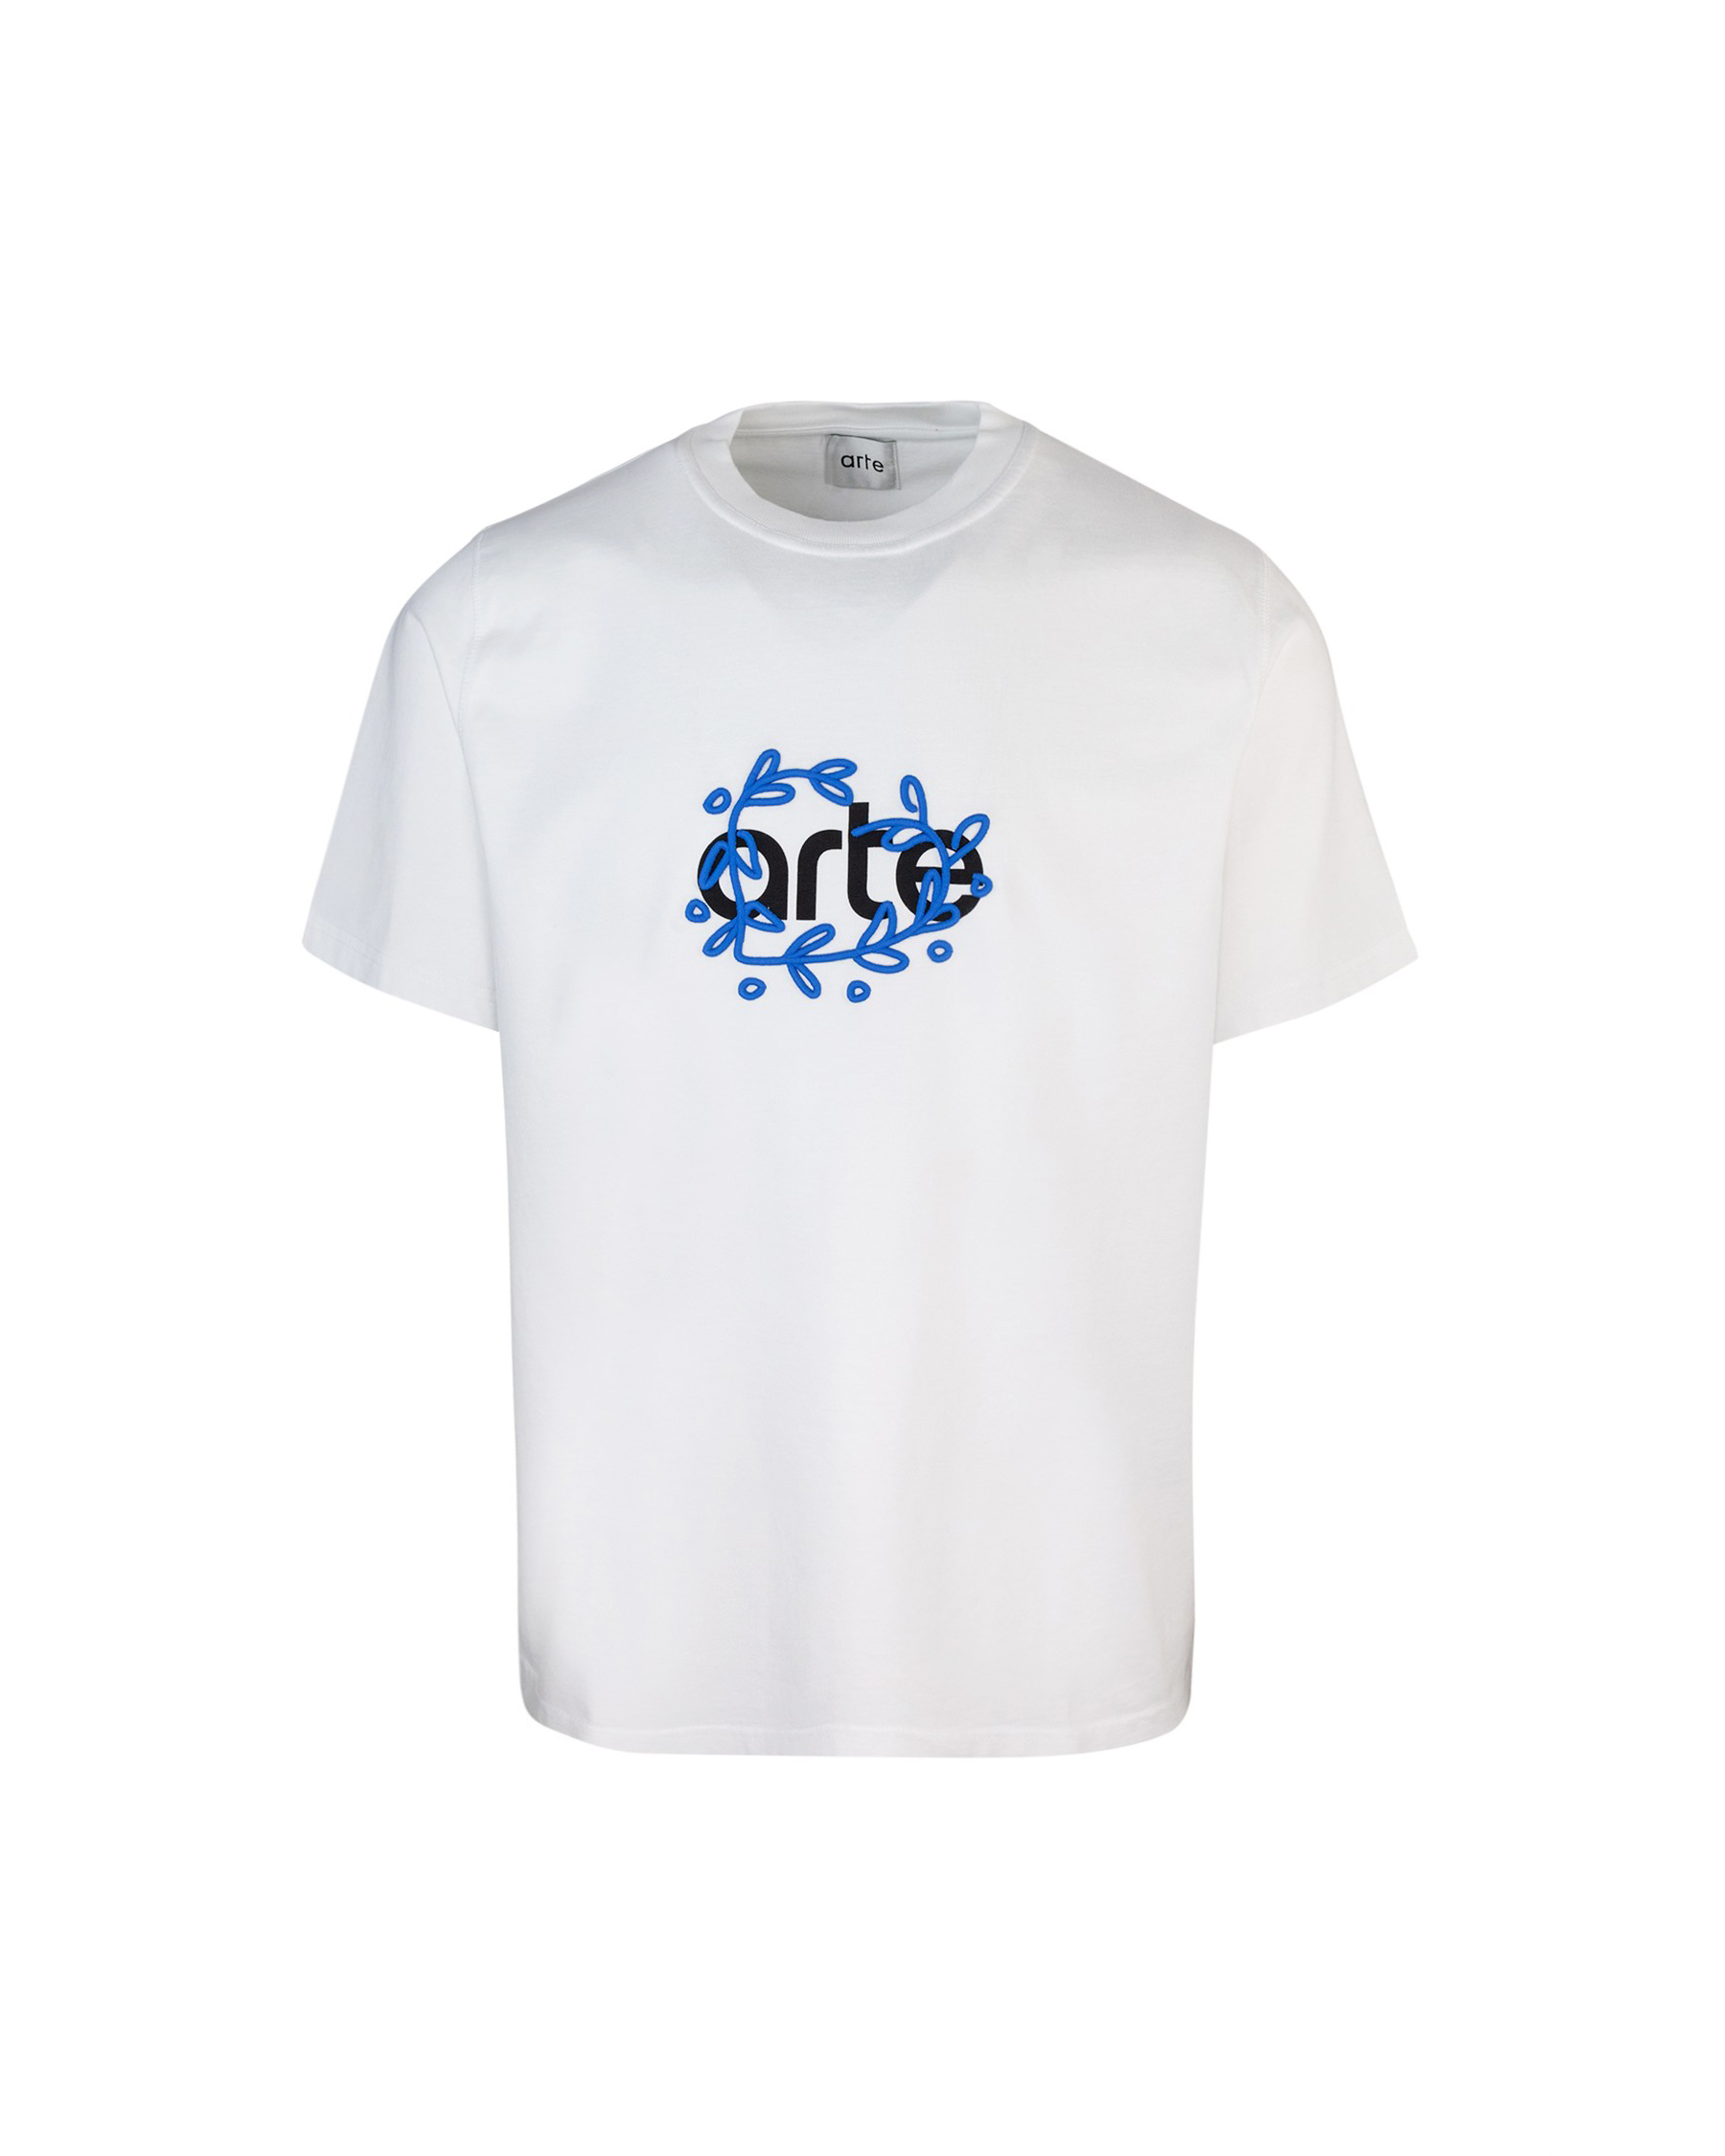 Shop Arte Antwerp Teo Arte White T-shirt